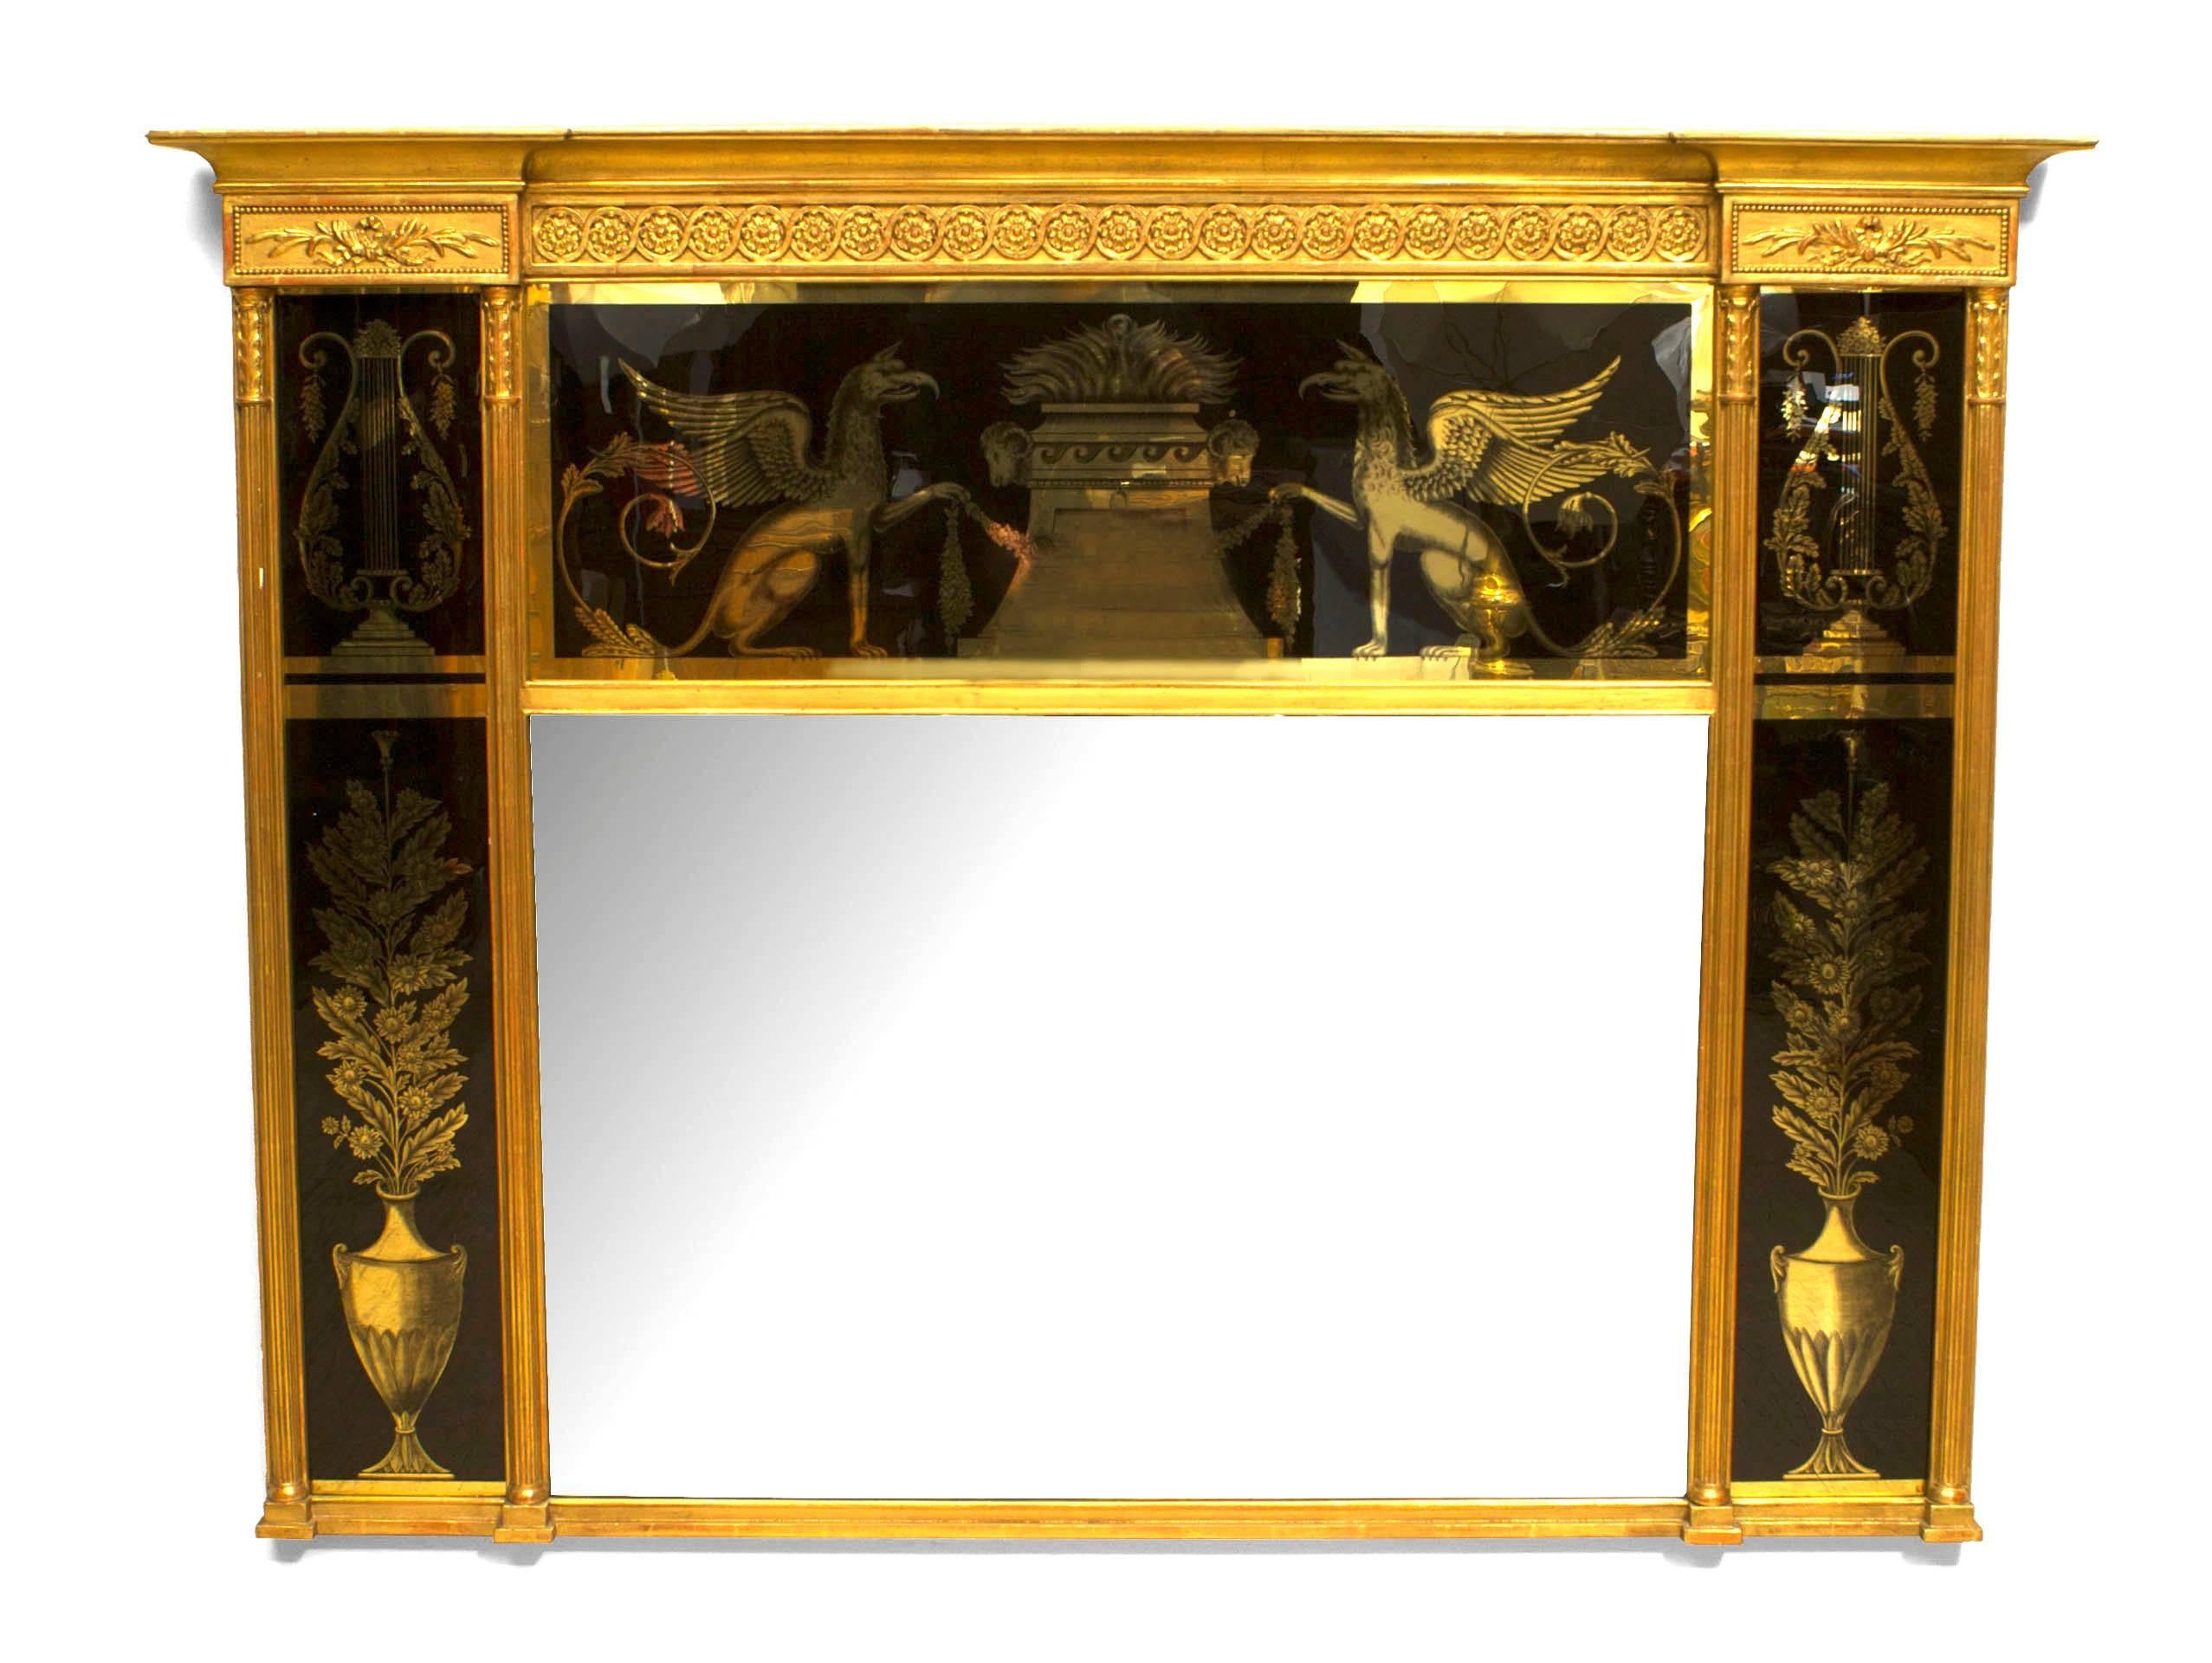 Miroir mural en bois doré sculpté de style néoclassique italien (XIXe siècle) avec panneaux de verre inversés à décor noir et or d'urnes, de griffons et de lyres.
